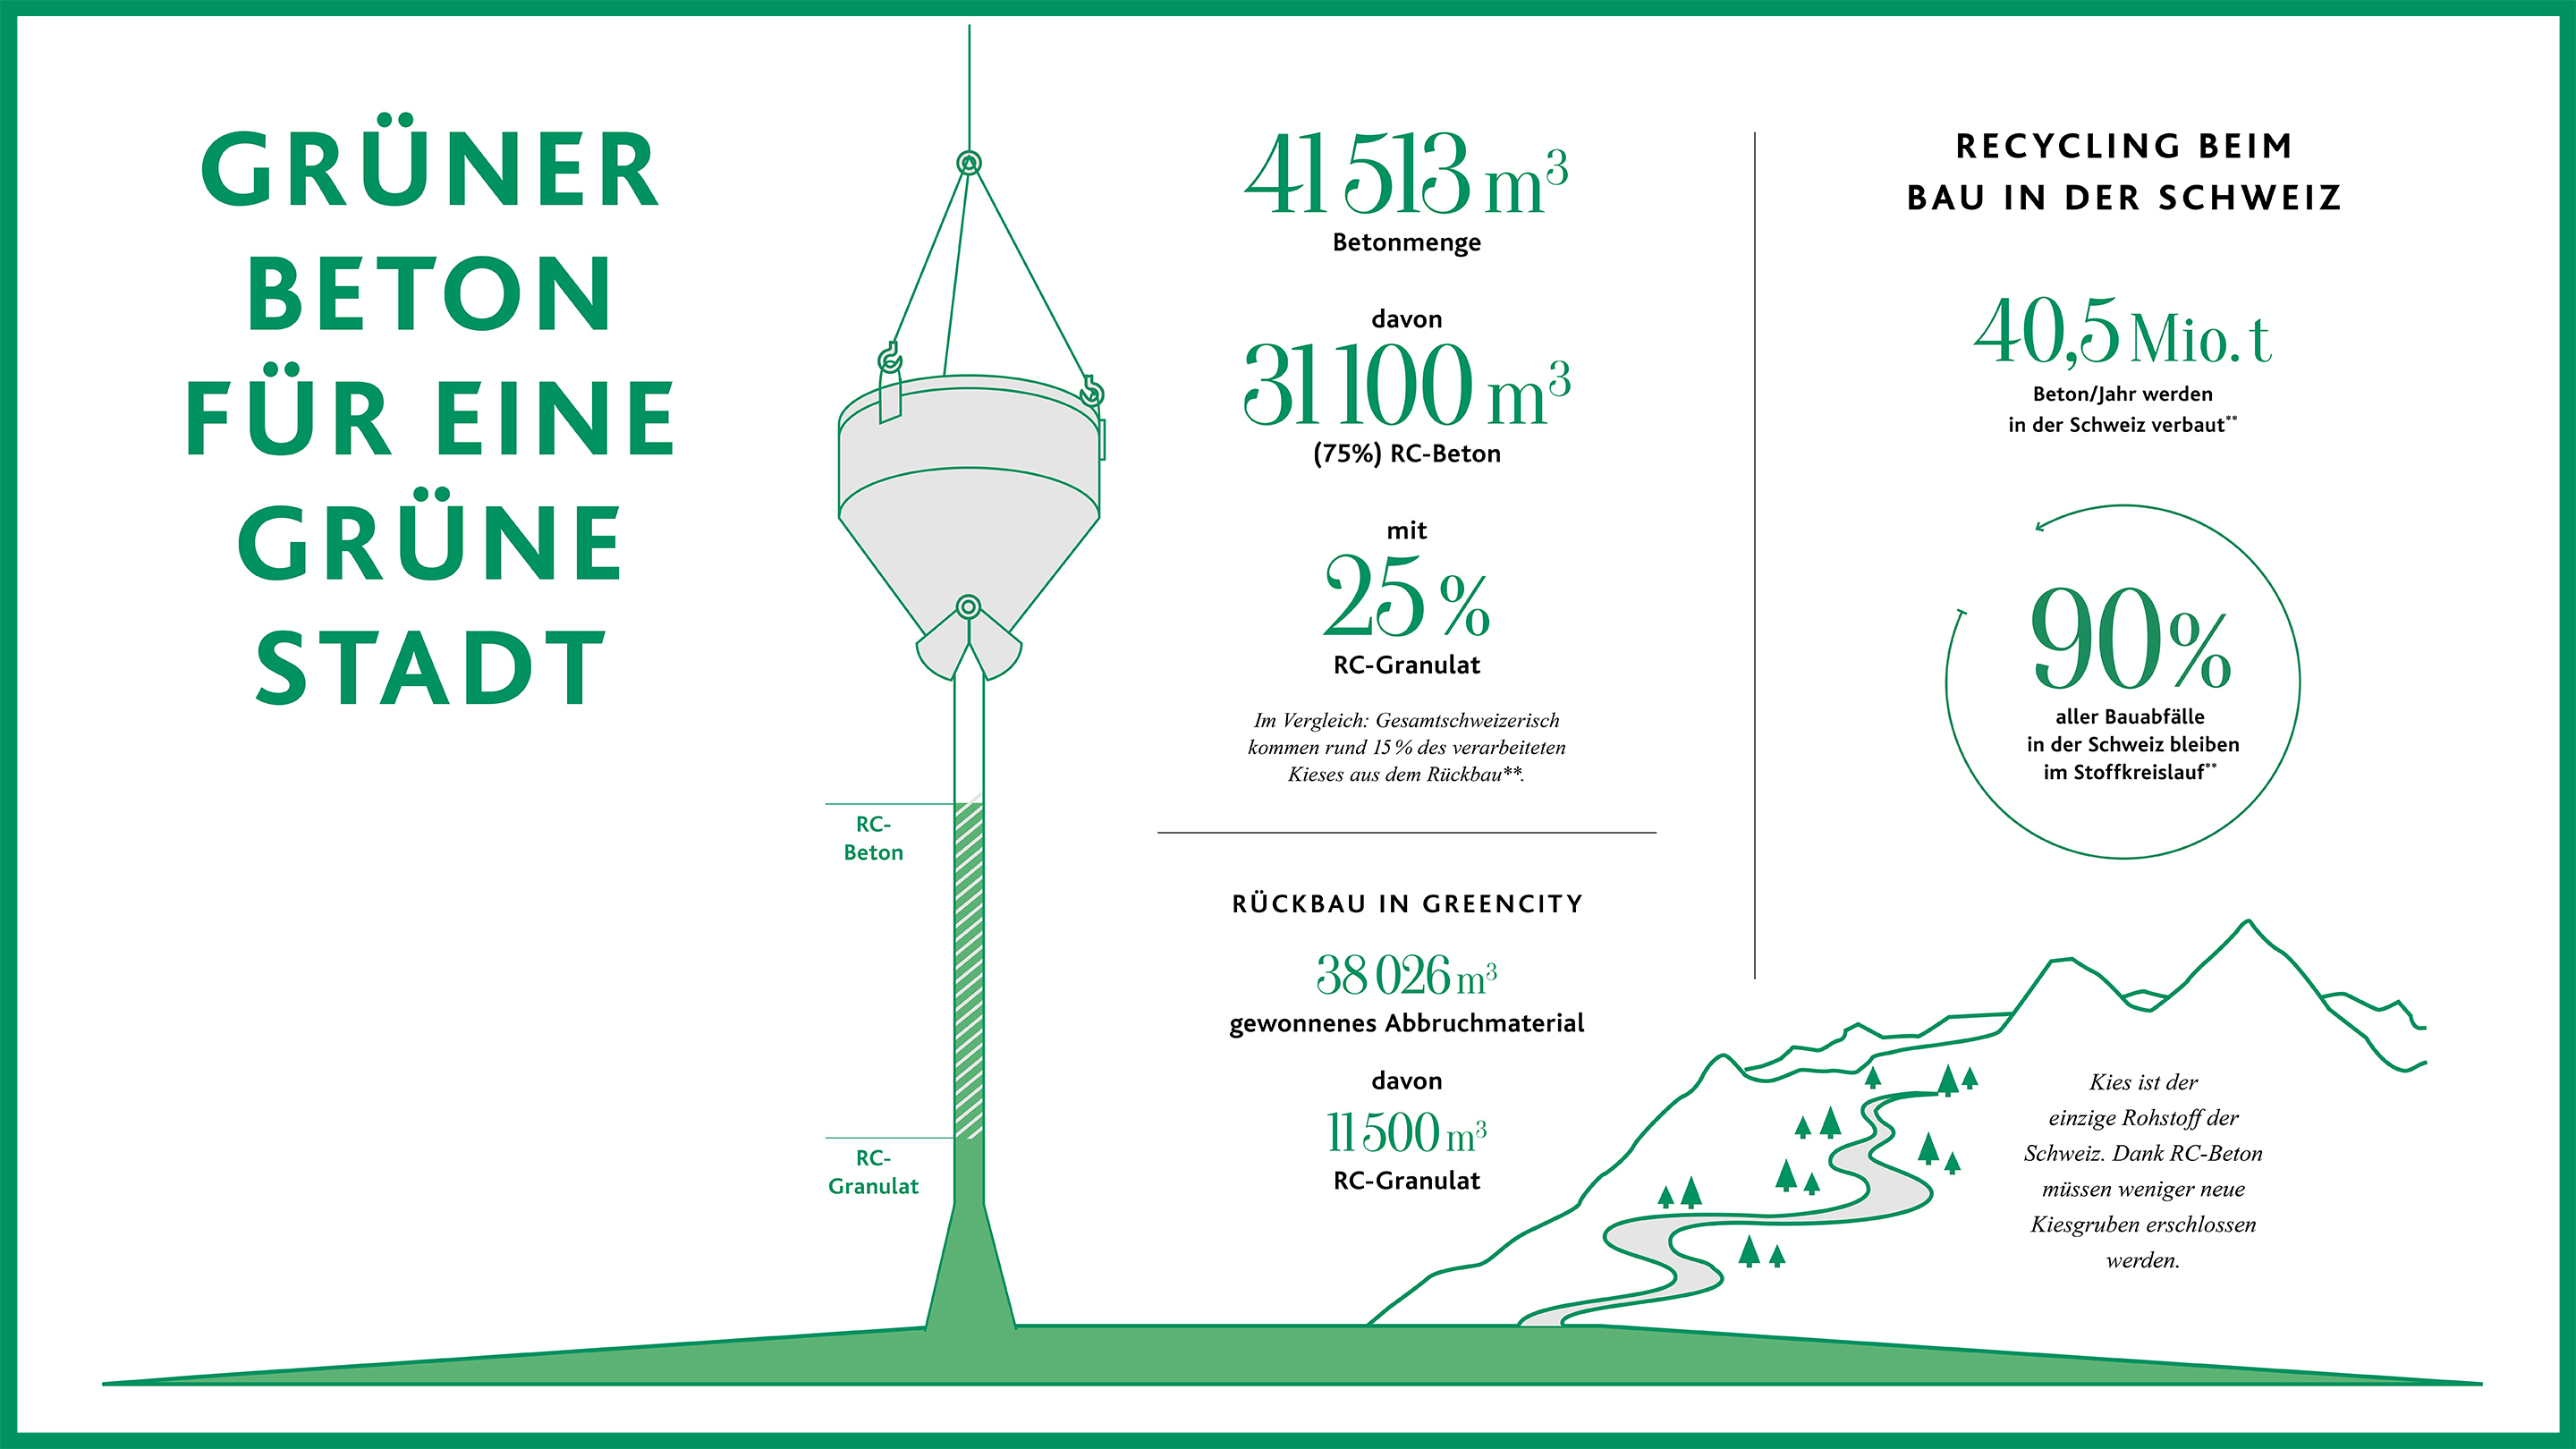 Factsheet 'Recycling beim Bau in der Schweiz'.